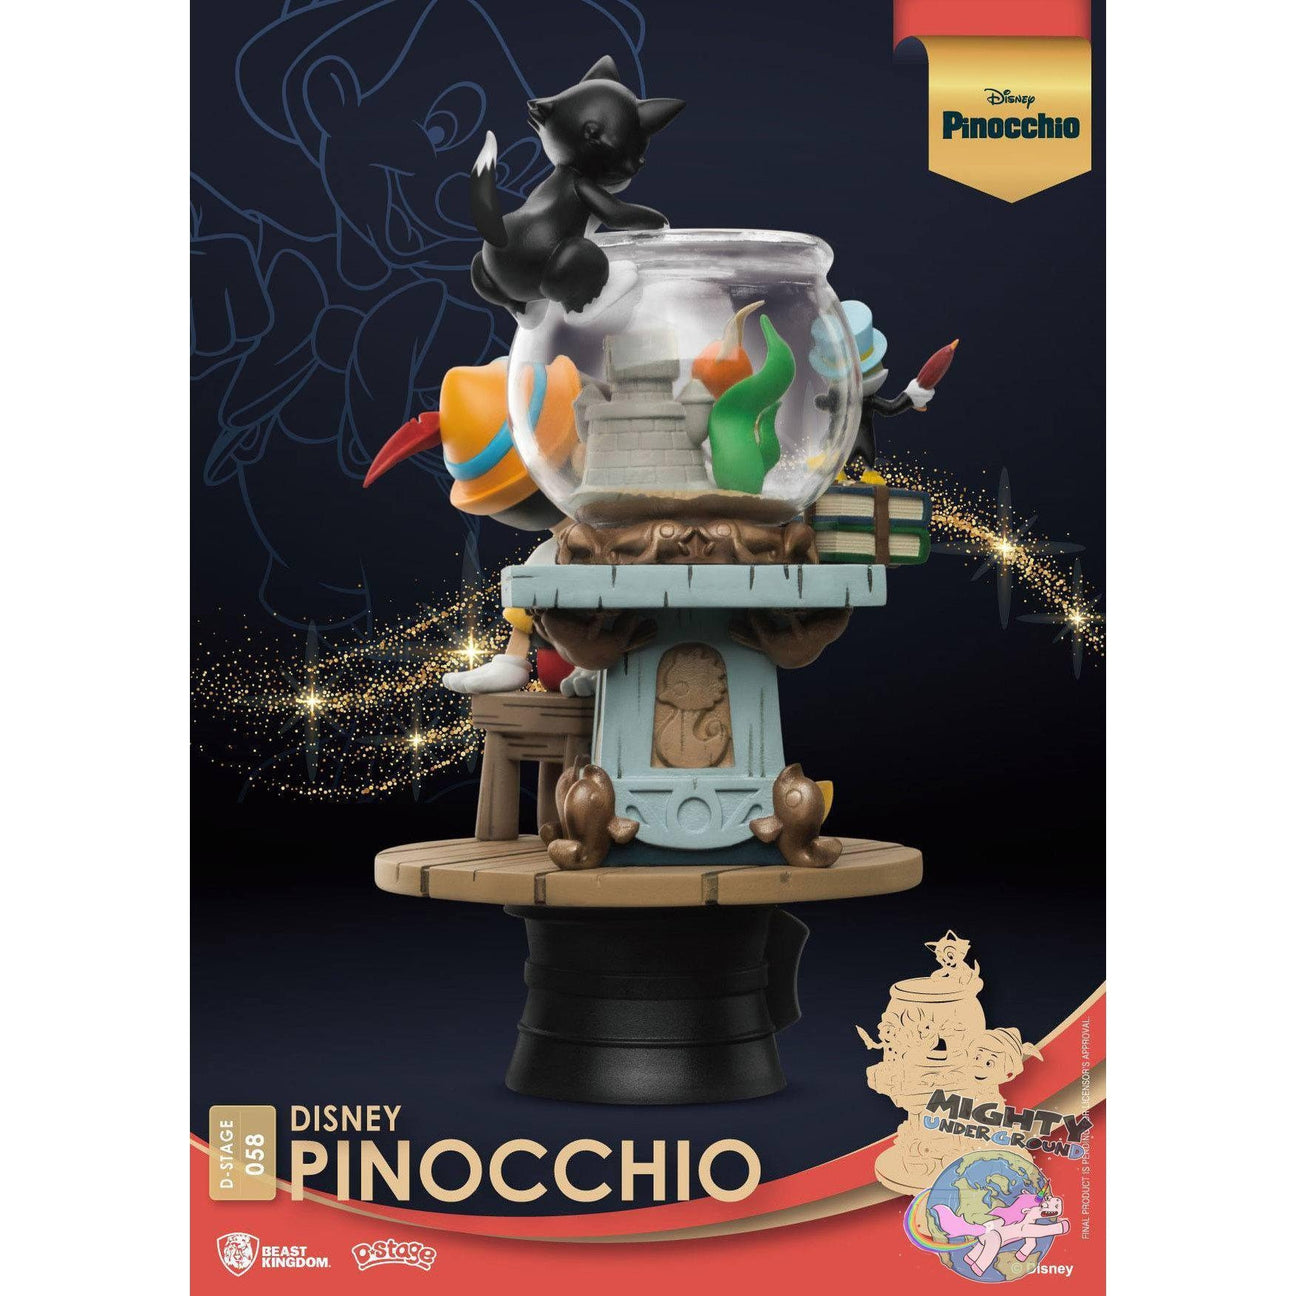 Disney: Pinocchio - Diorama VORBESTELLUNG!-Diorama-Beast Kingdom-mighty-underground